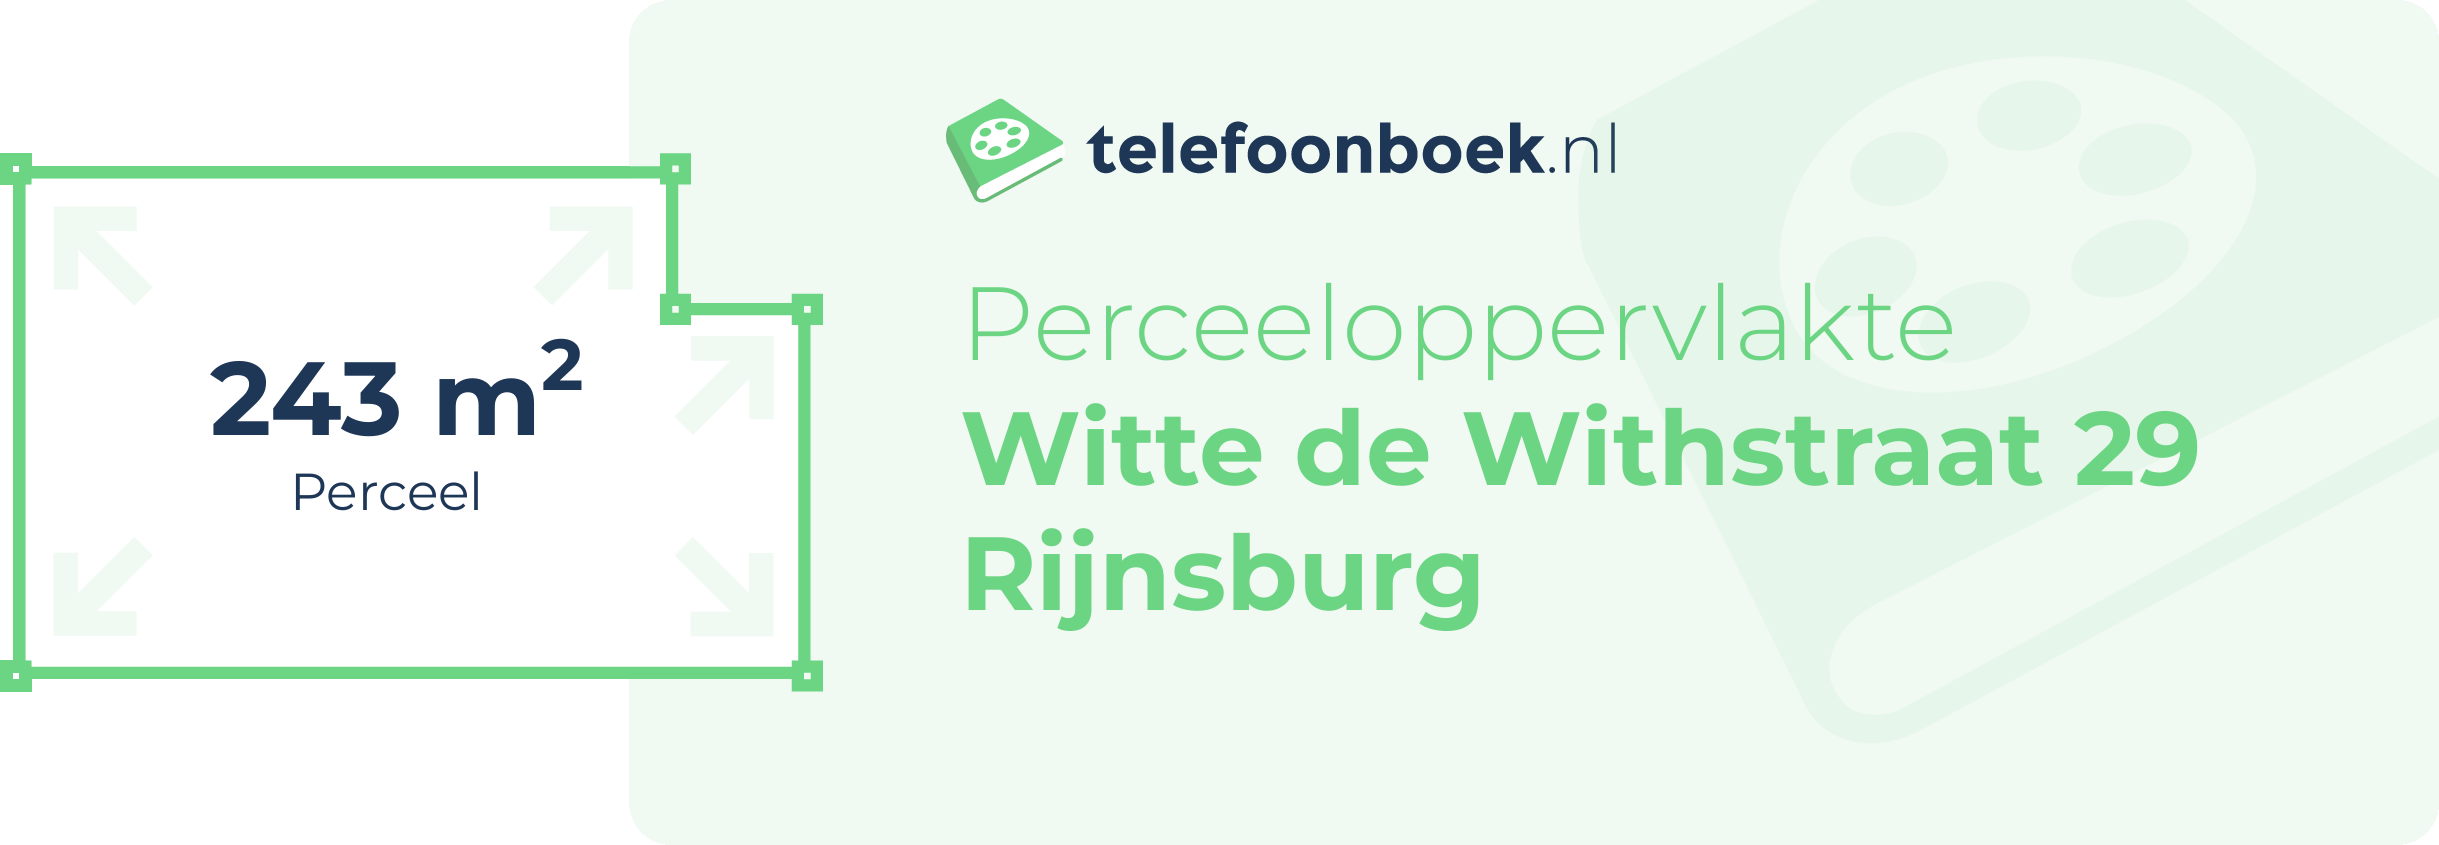 Perceeloppervlakte Witte De Withstraat 29 Rijnsburg